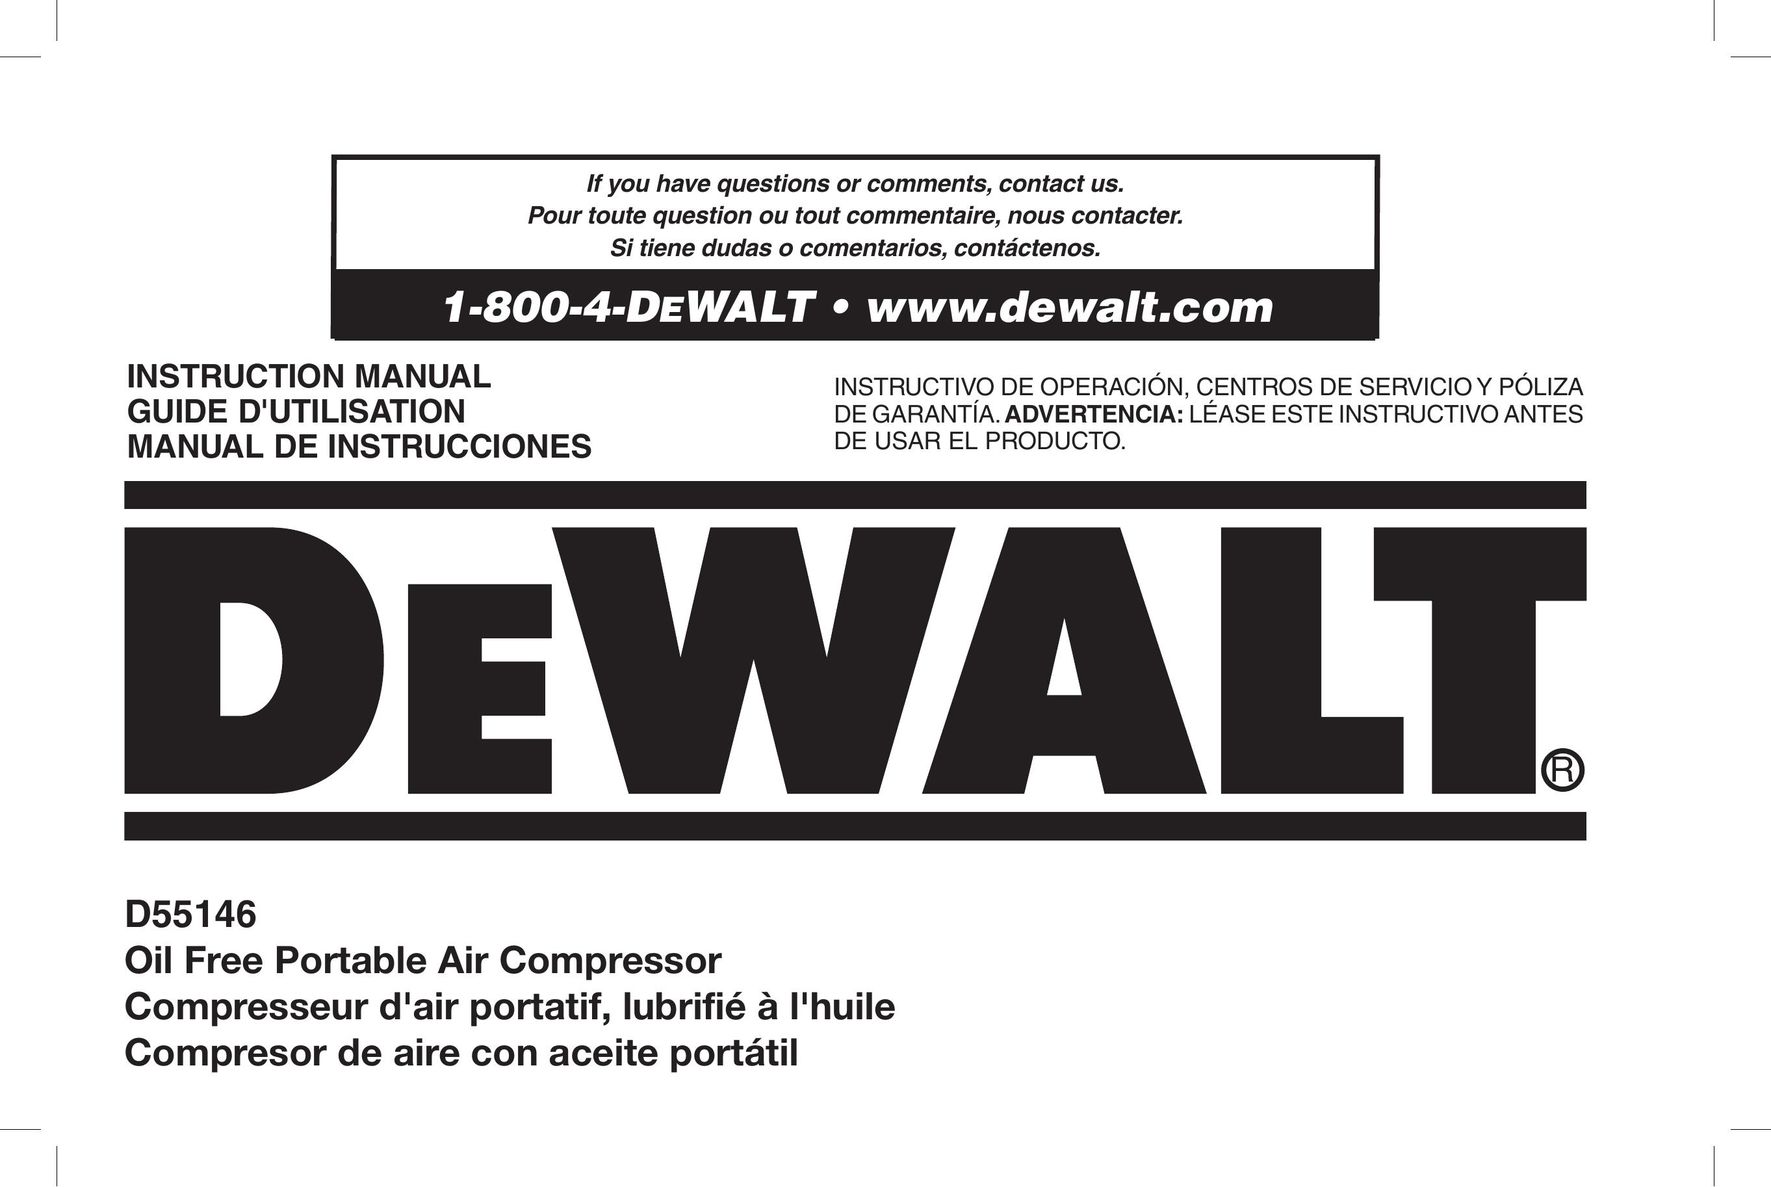 DeWalt D55146R Air Compressor User Manual